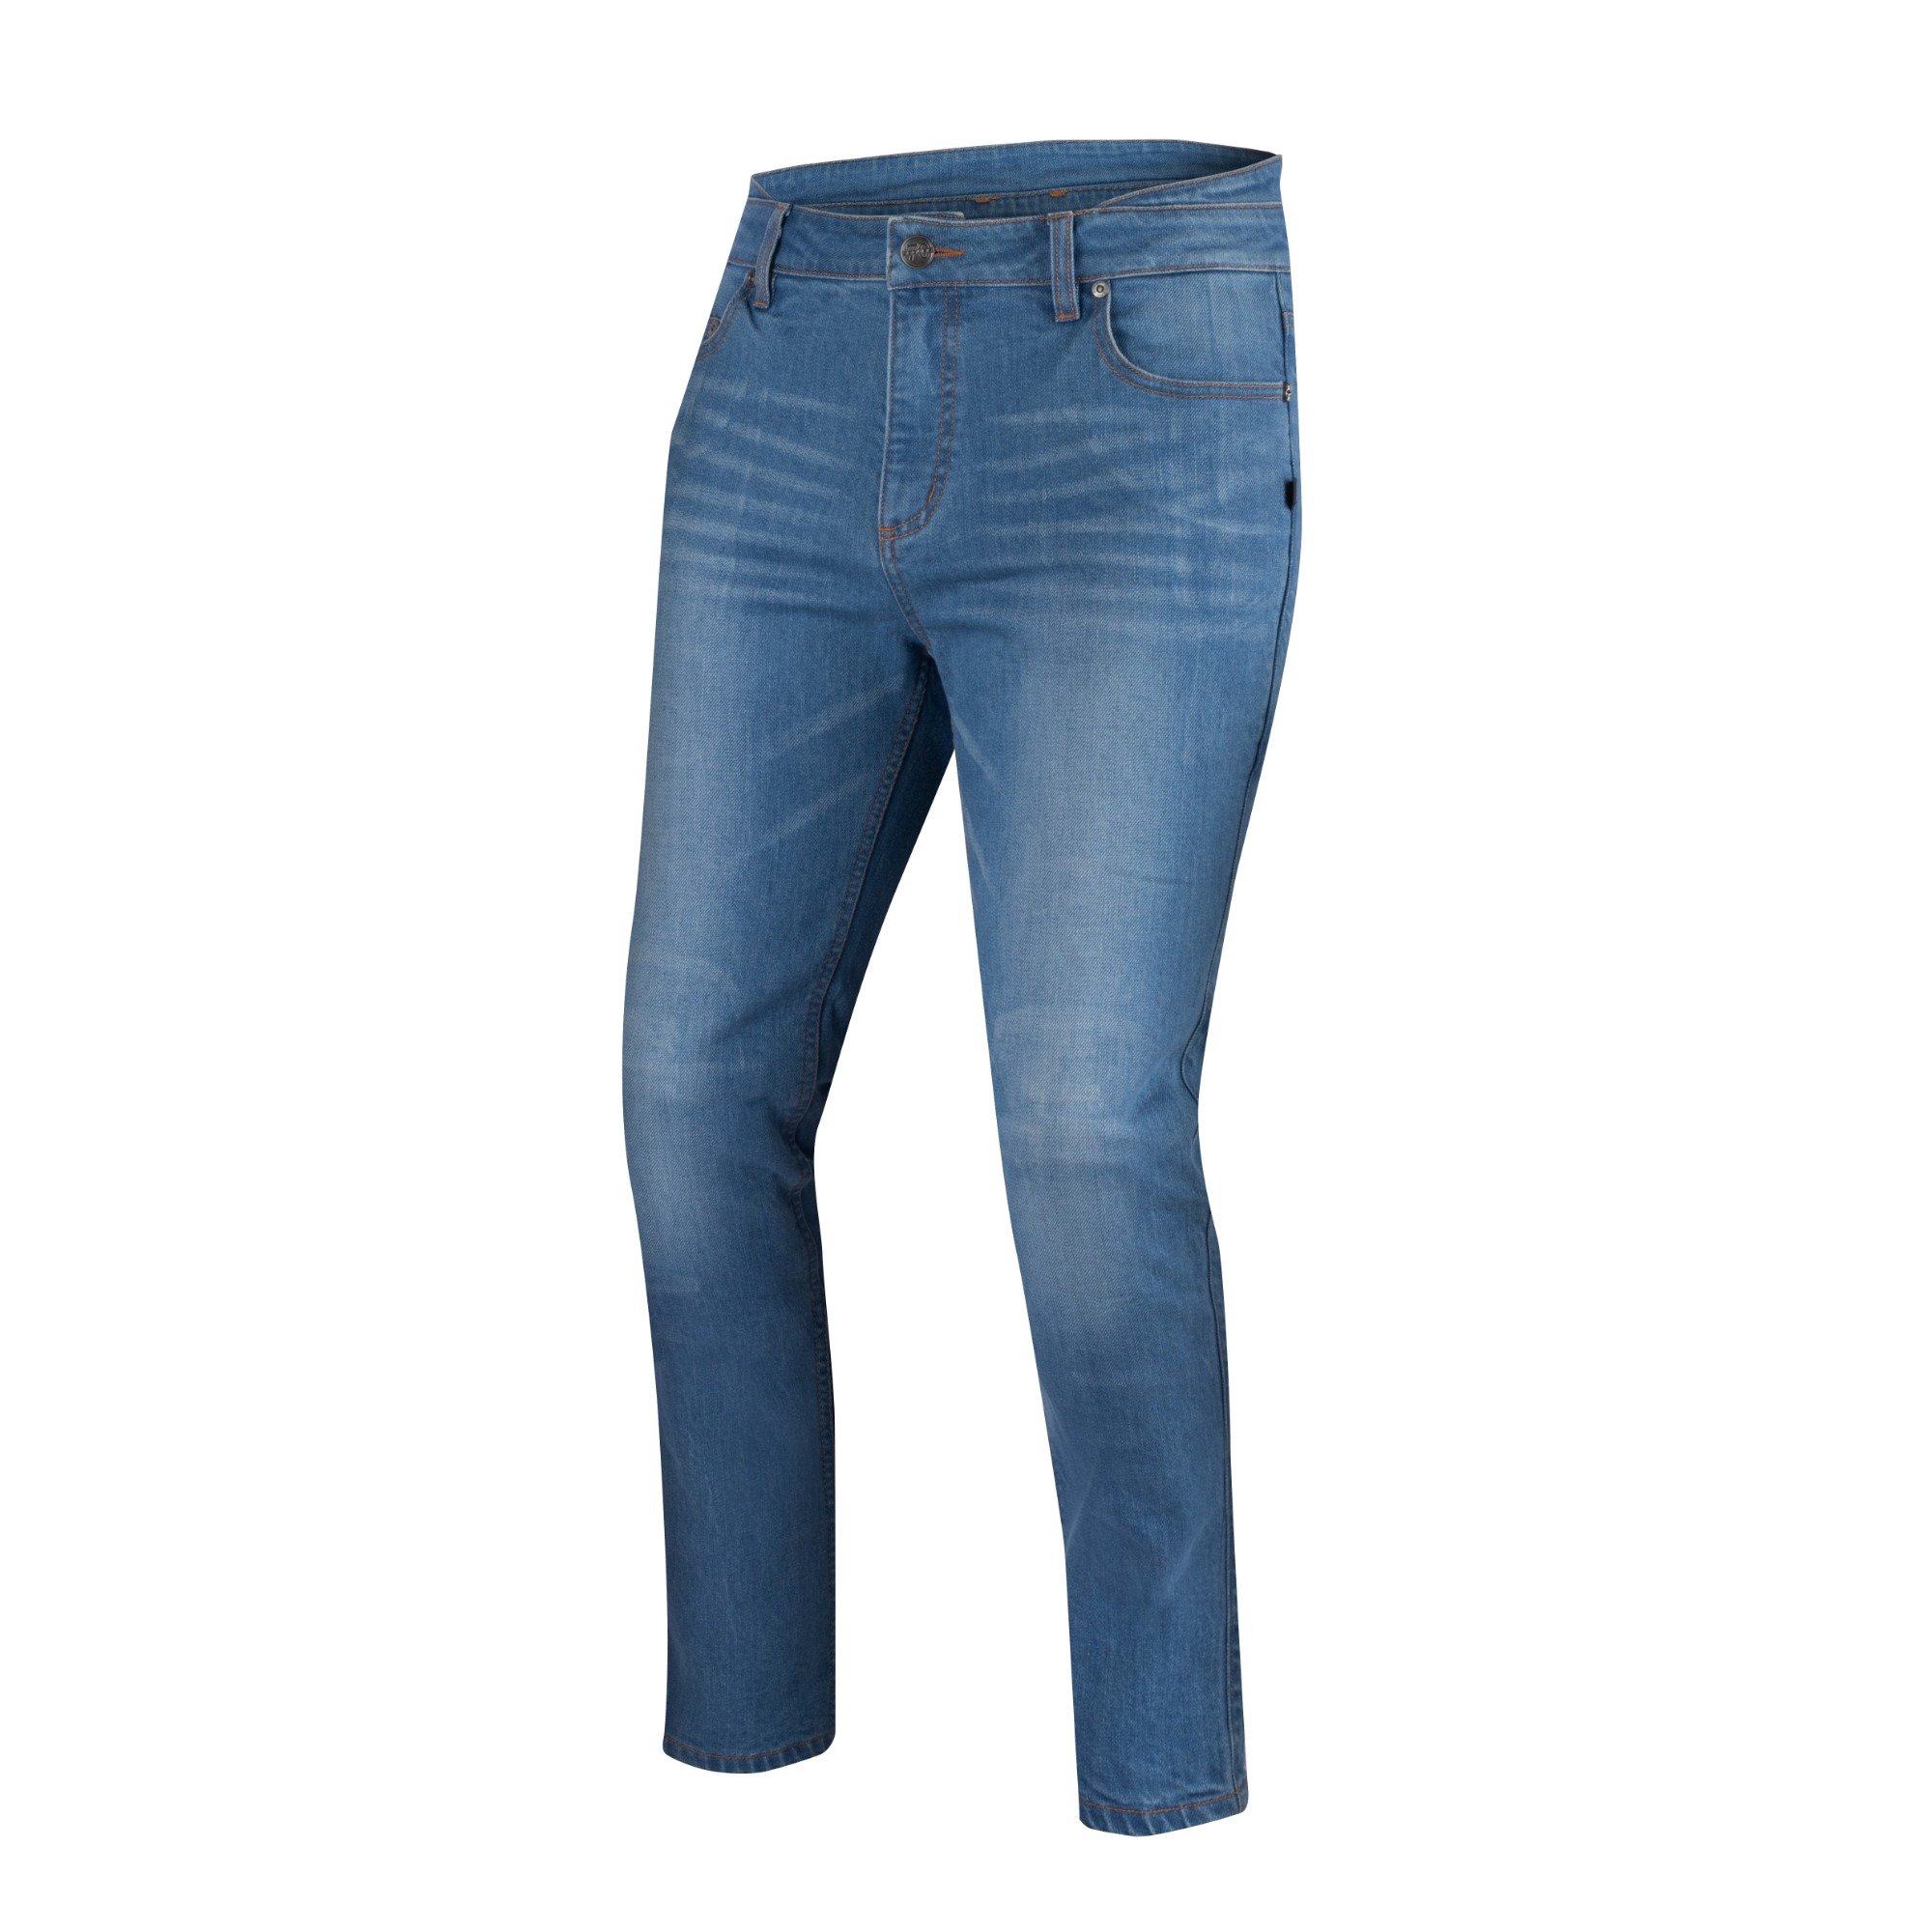 Image of Segura Trousers Rosco Blue Talla S